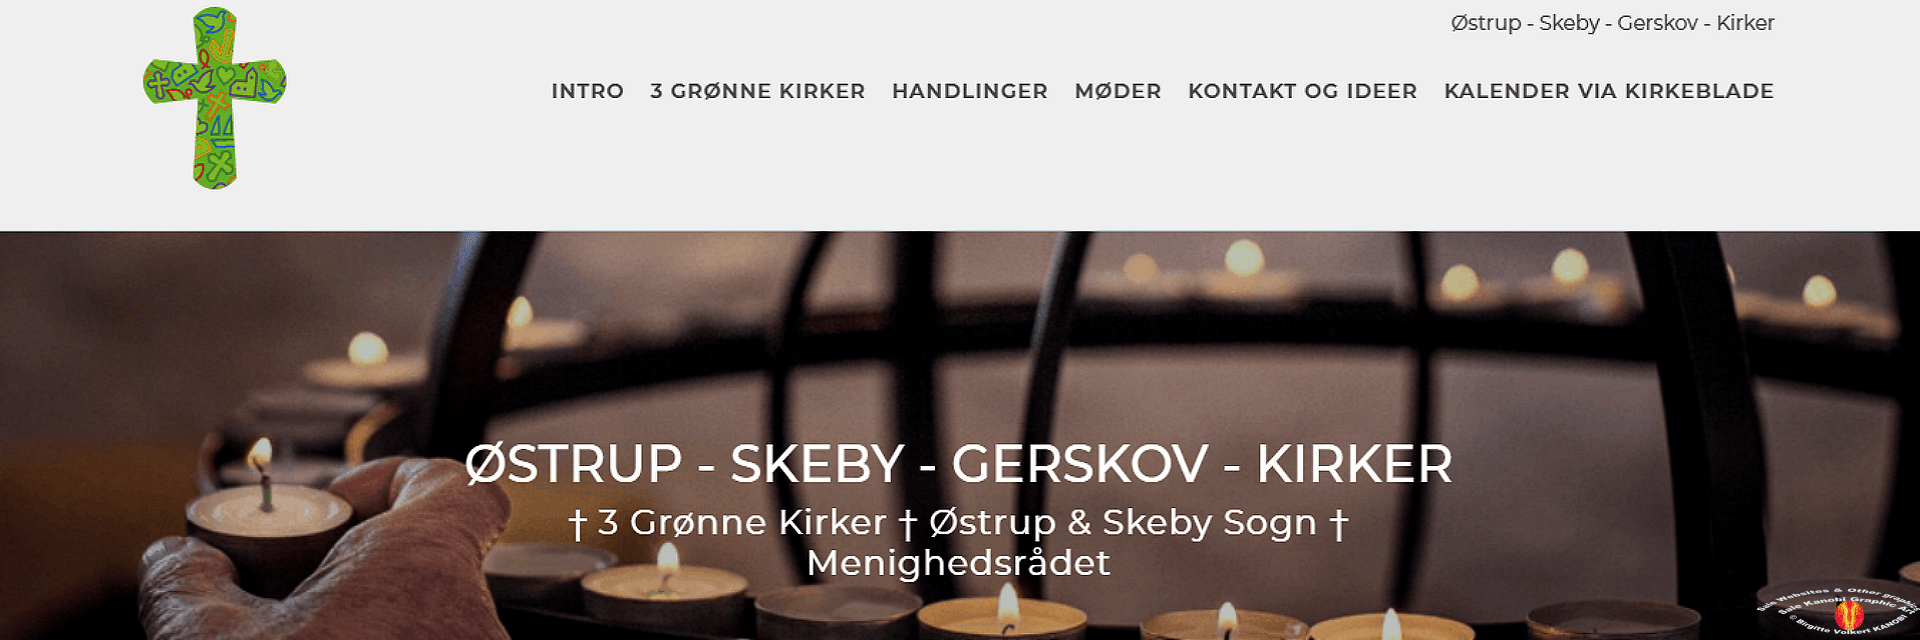 Link Østrup Skeby Gerskov Kirker Kanobi® frontpage screenprint.